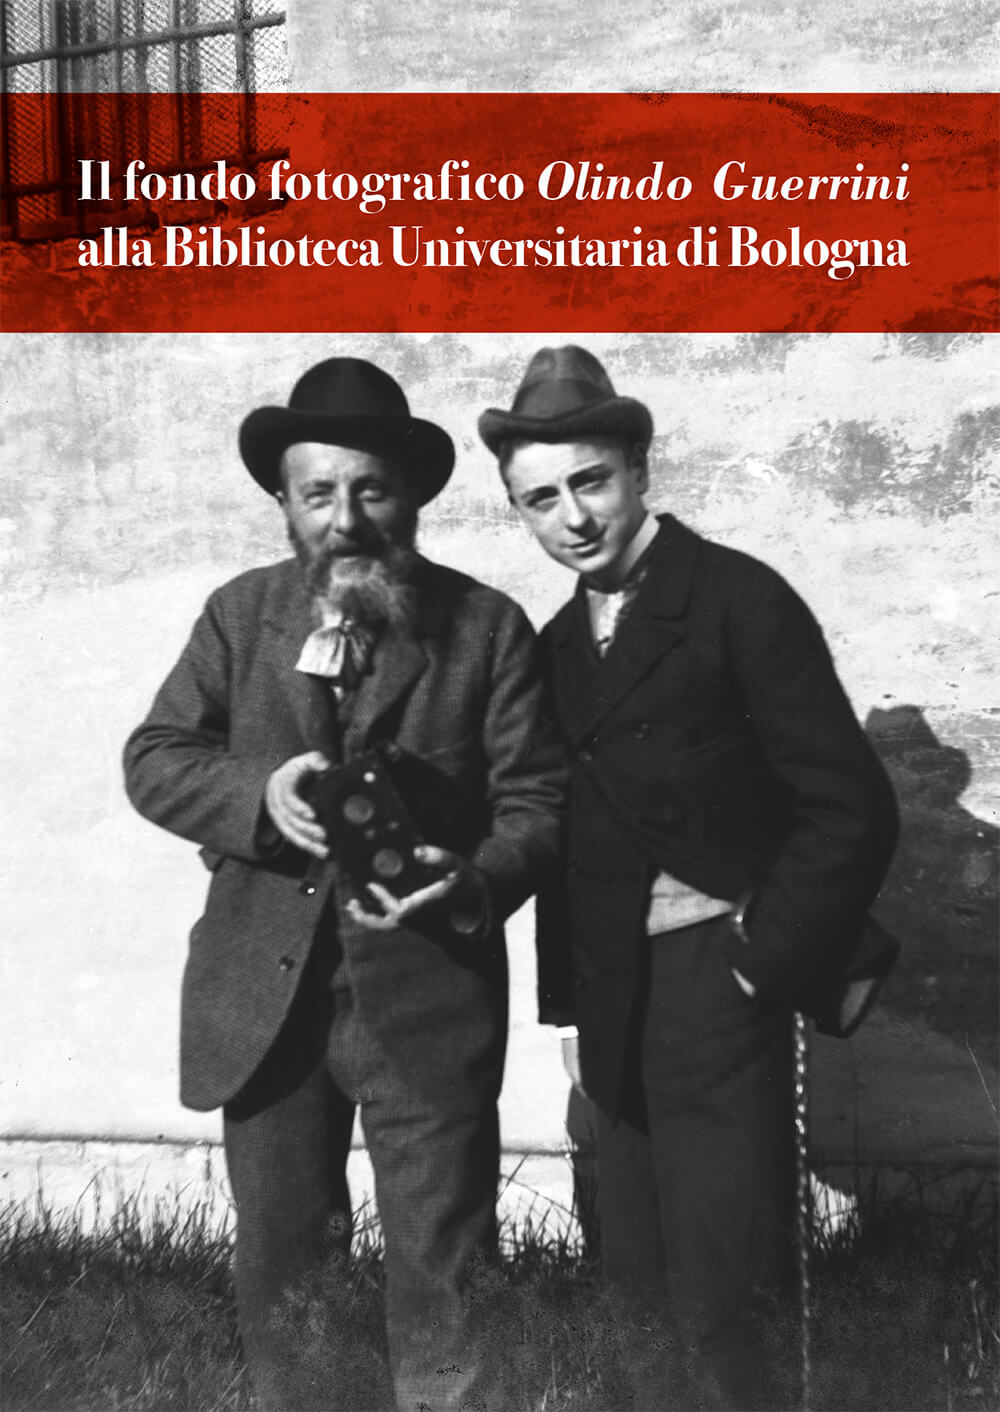 Il fondo fotografico Olindo Guerrini alla Biblioteca Universitaria di Bologna - Bologna University Press